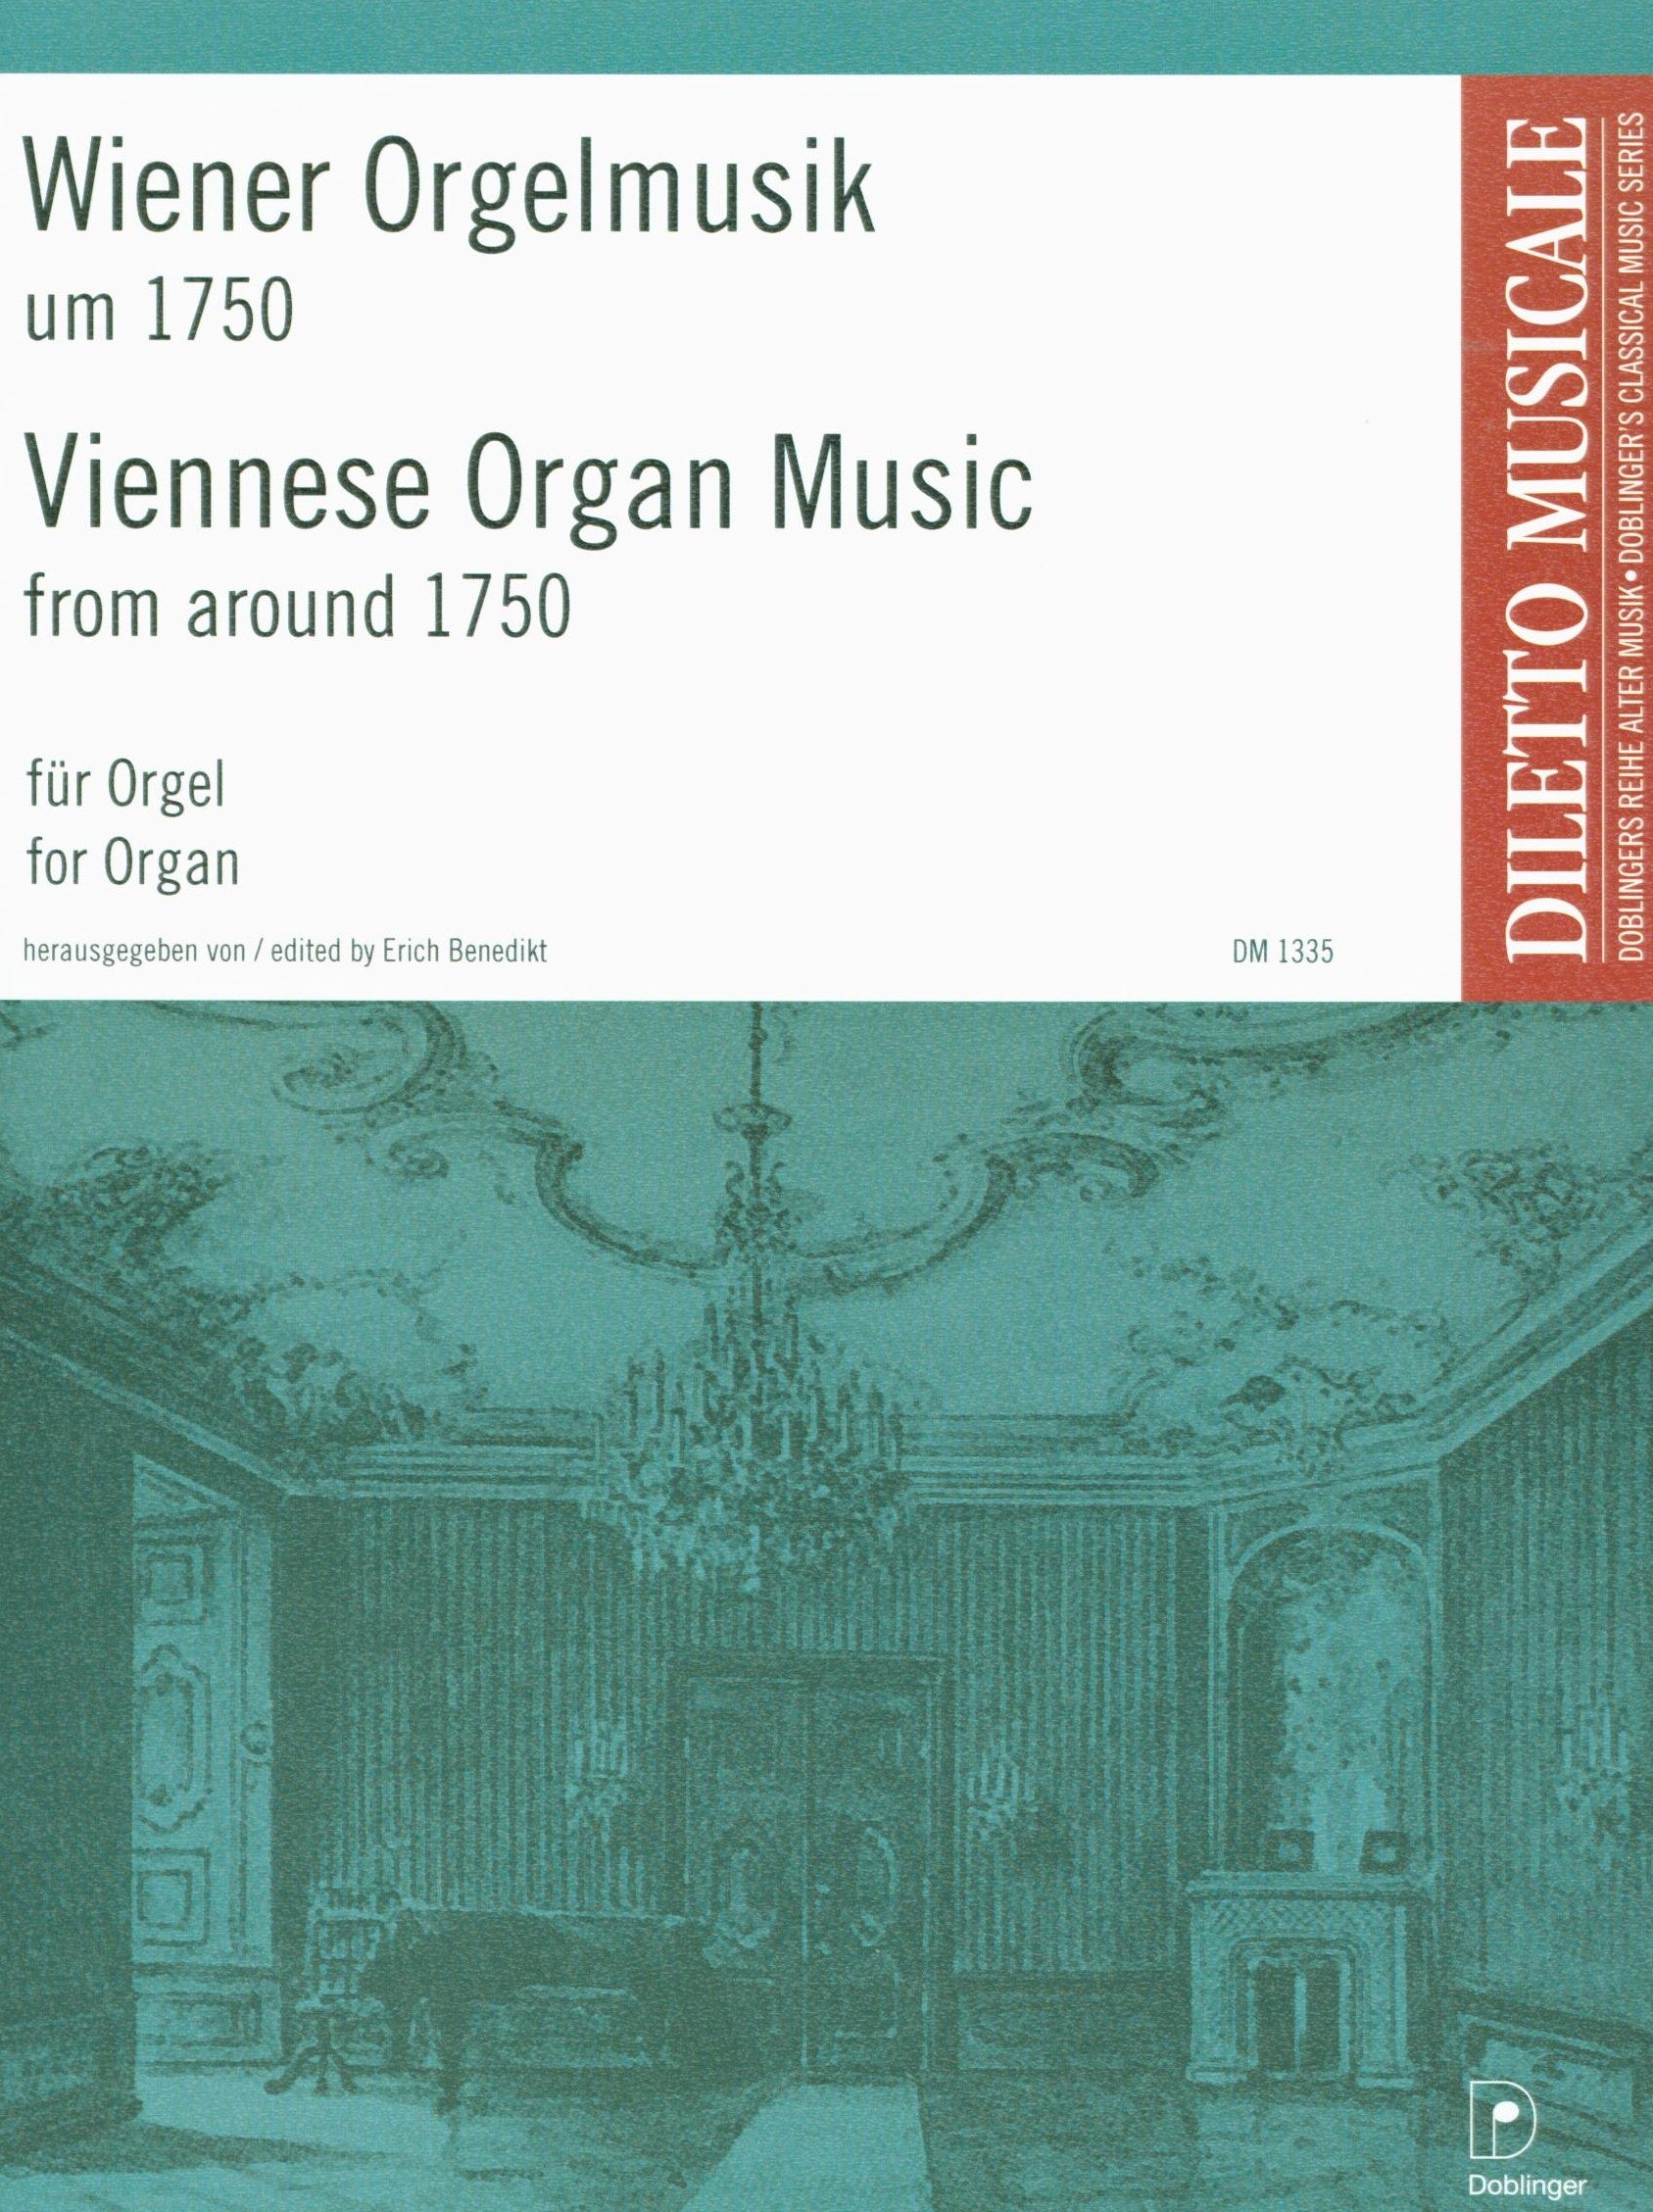 Viennese Organ Music from around 1750